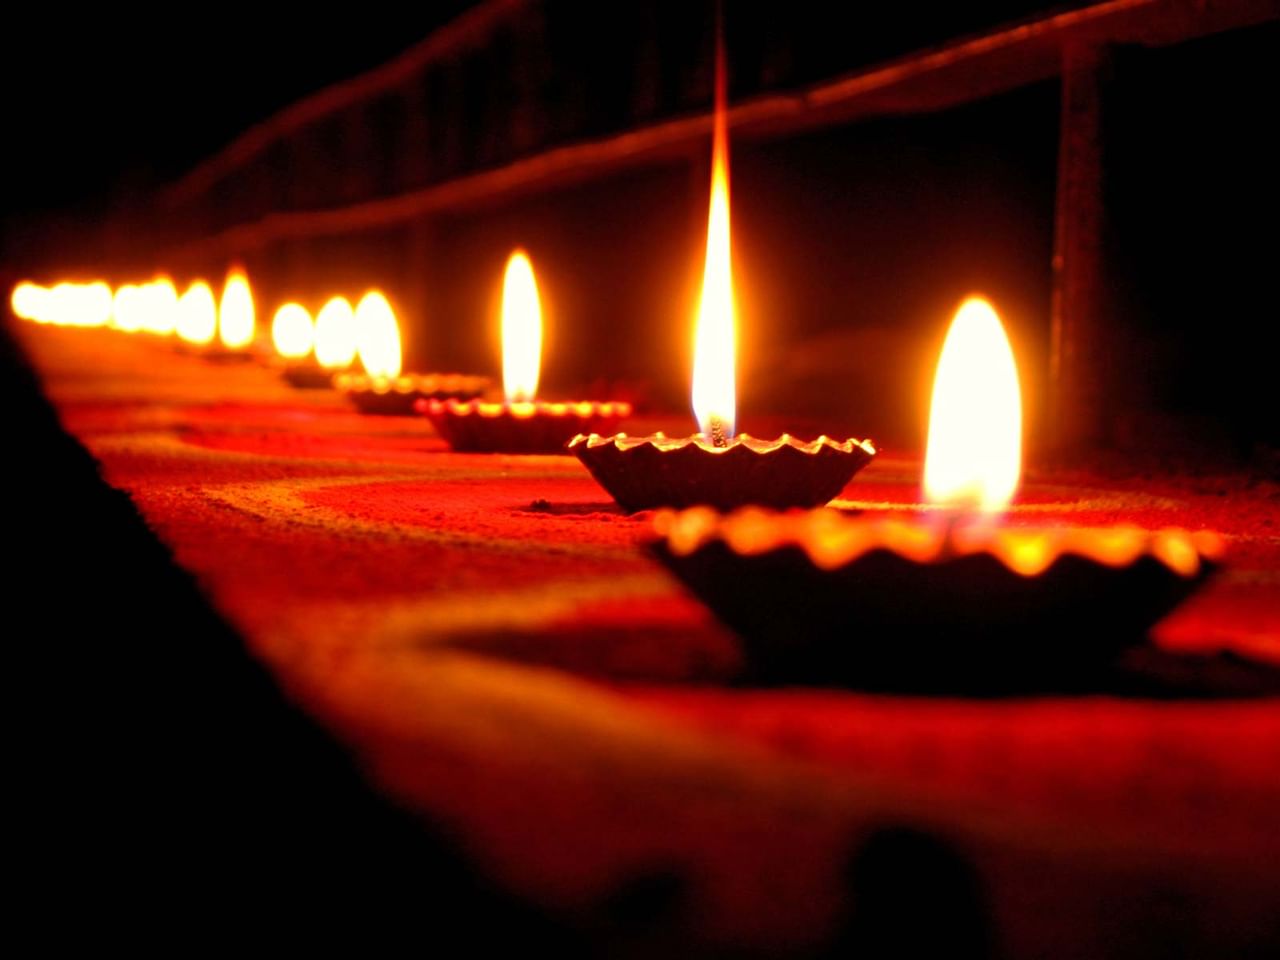 Diwali 2019: જાણો શા માટે દિવાળીનો તહેવાર ઉજવવામાં આવે છે?